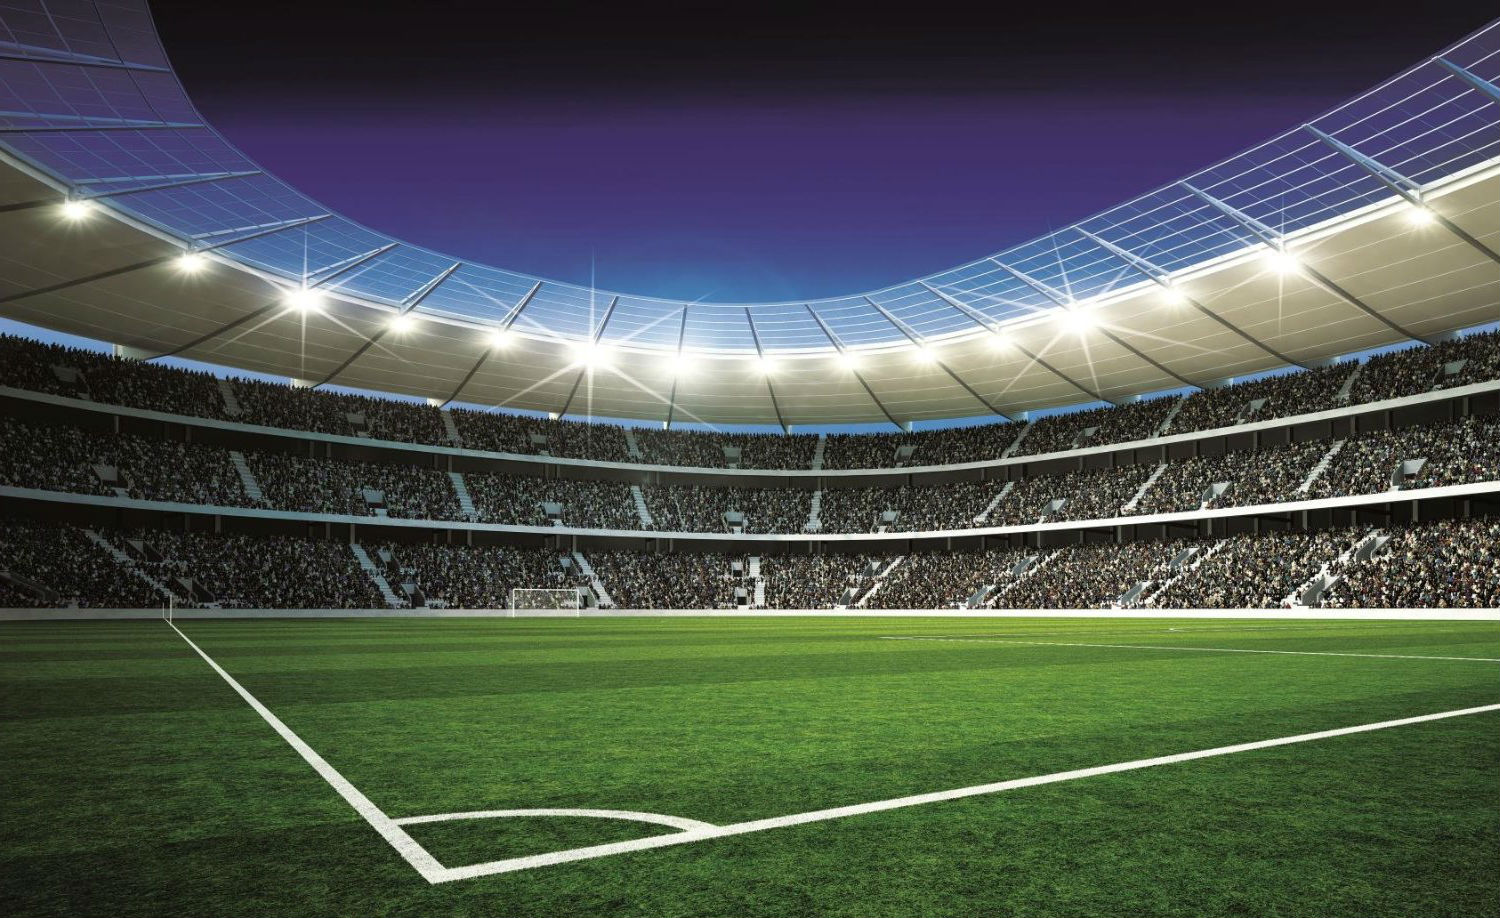 fonds d'écran de football hd,stade,atmosphère,stade spécifique au football,lumière,herbe